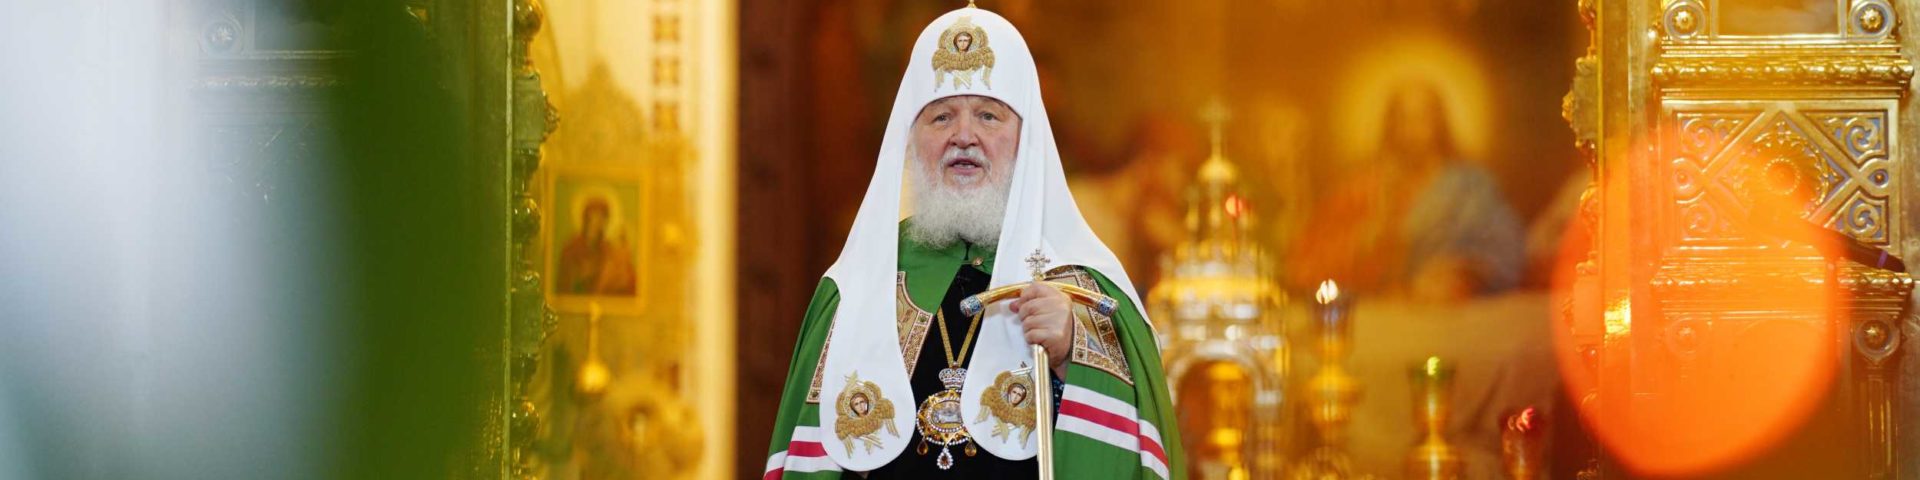 Обращение Святейшего Патриарха Кирилла в День трезвости